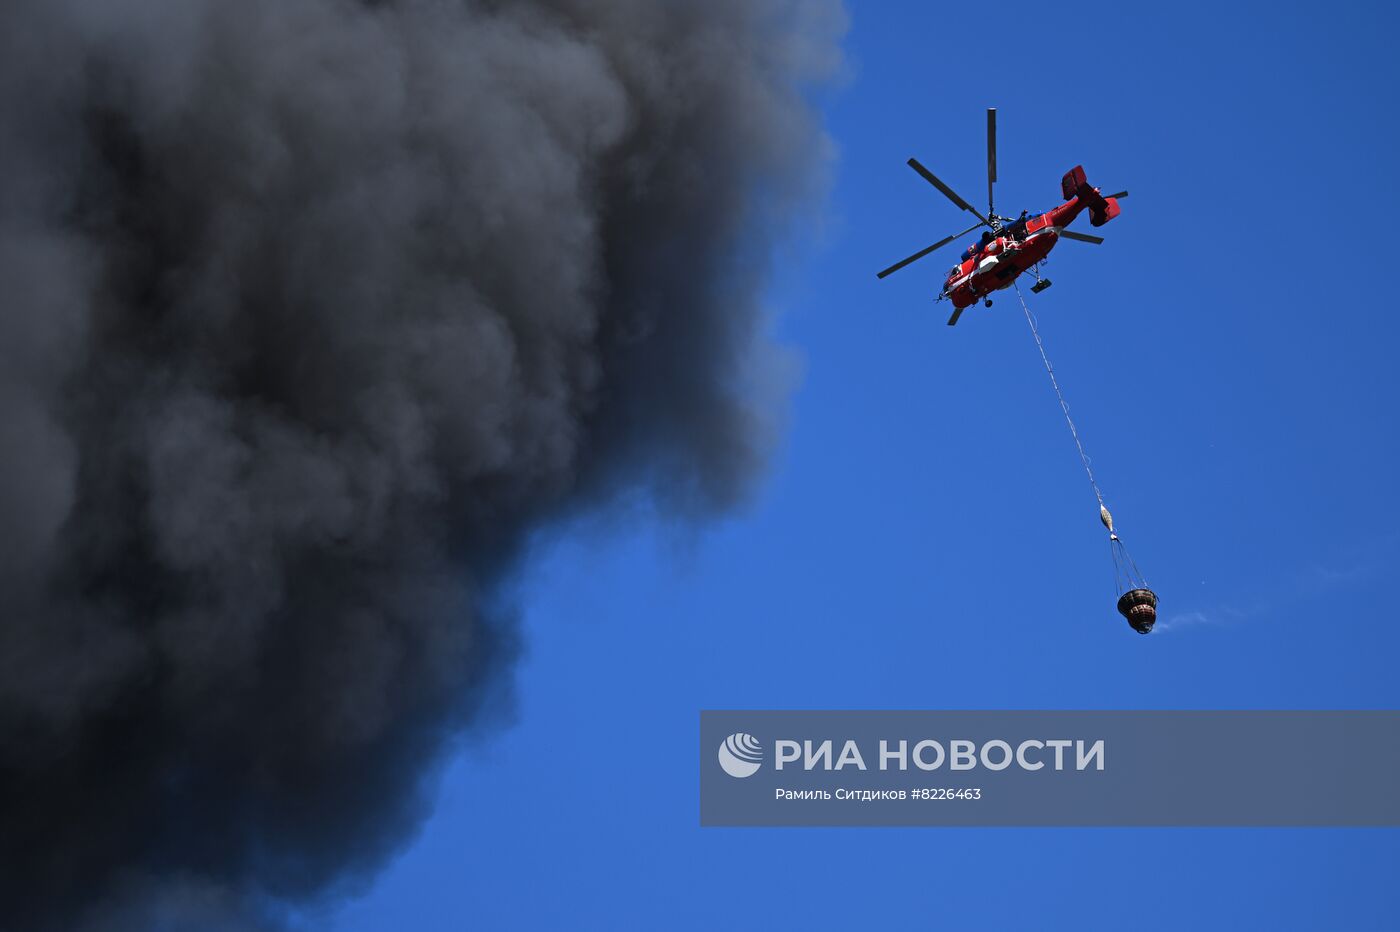 Пожар в промзоне на юге Москвы 